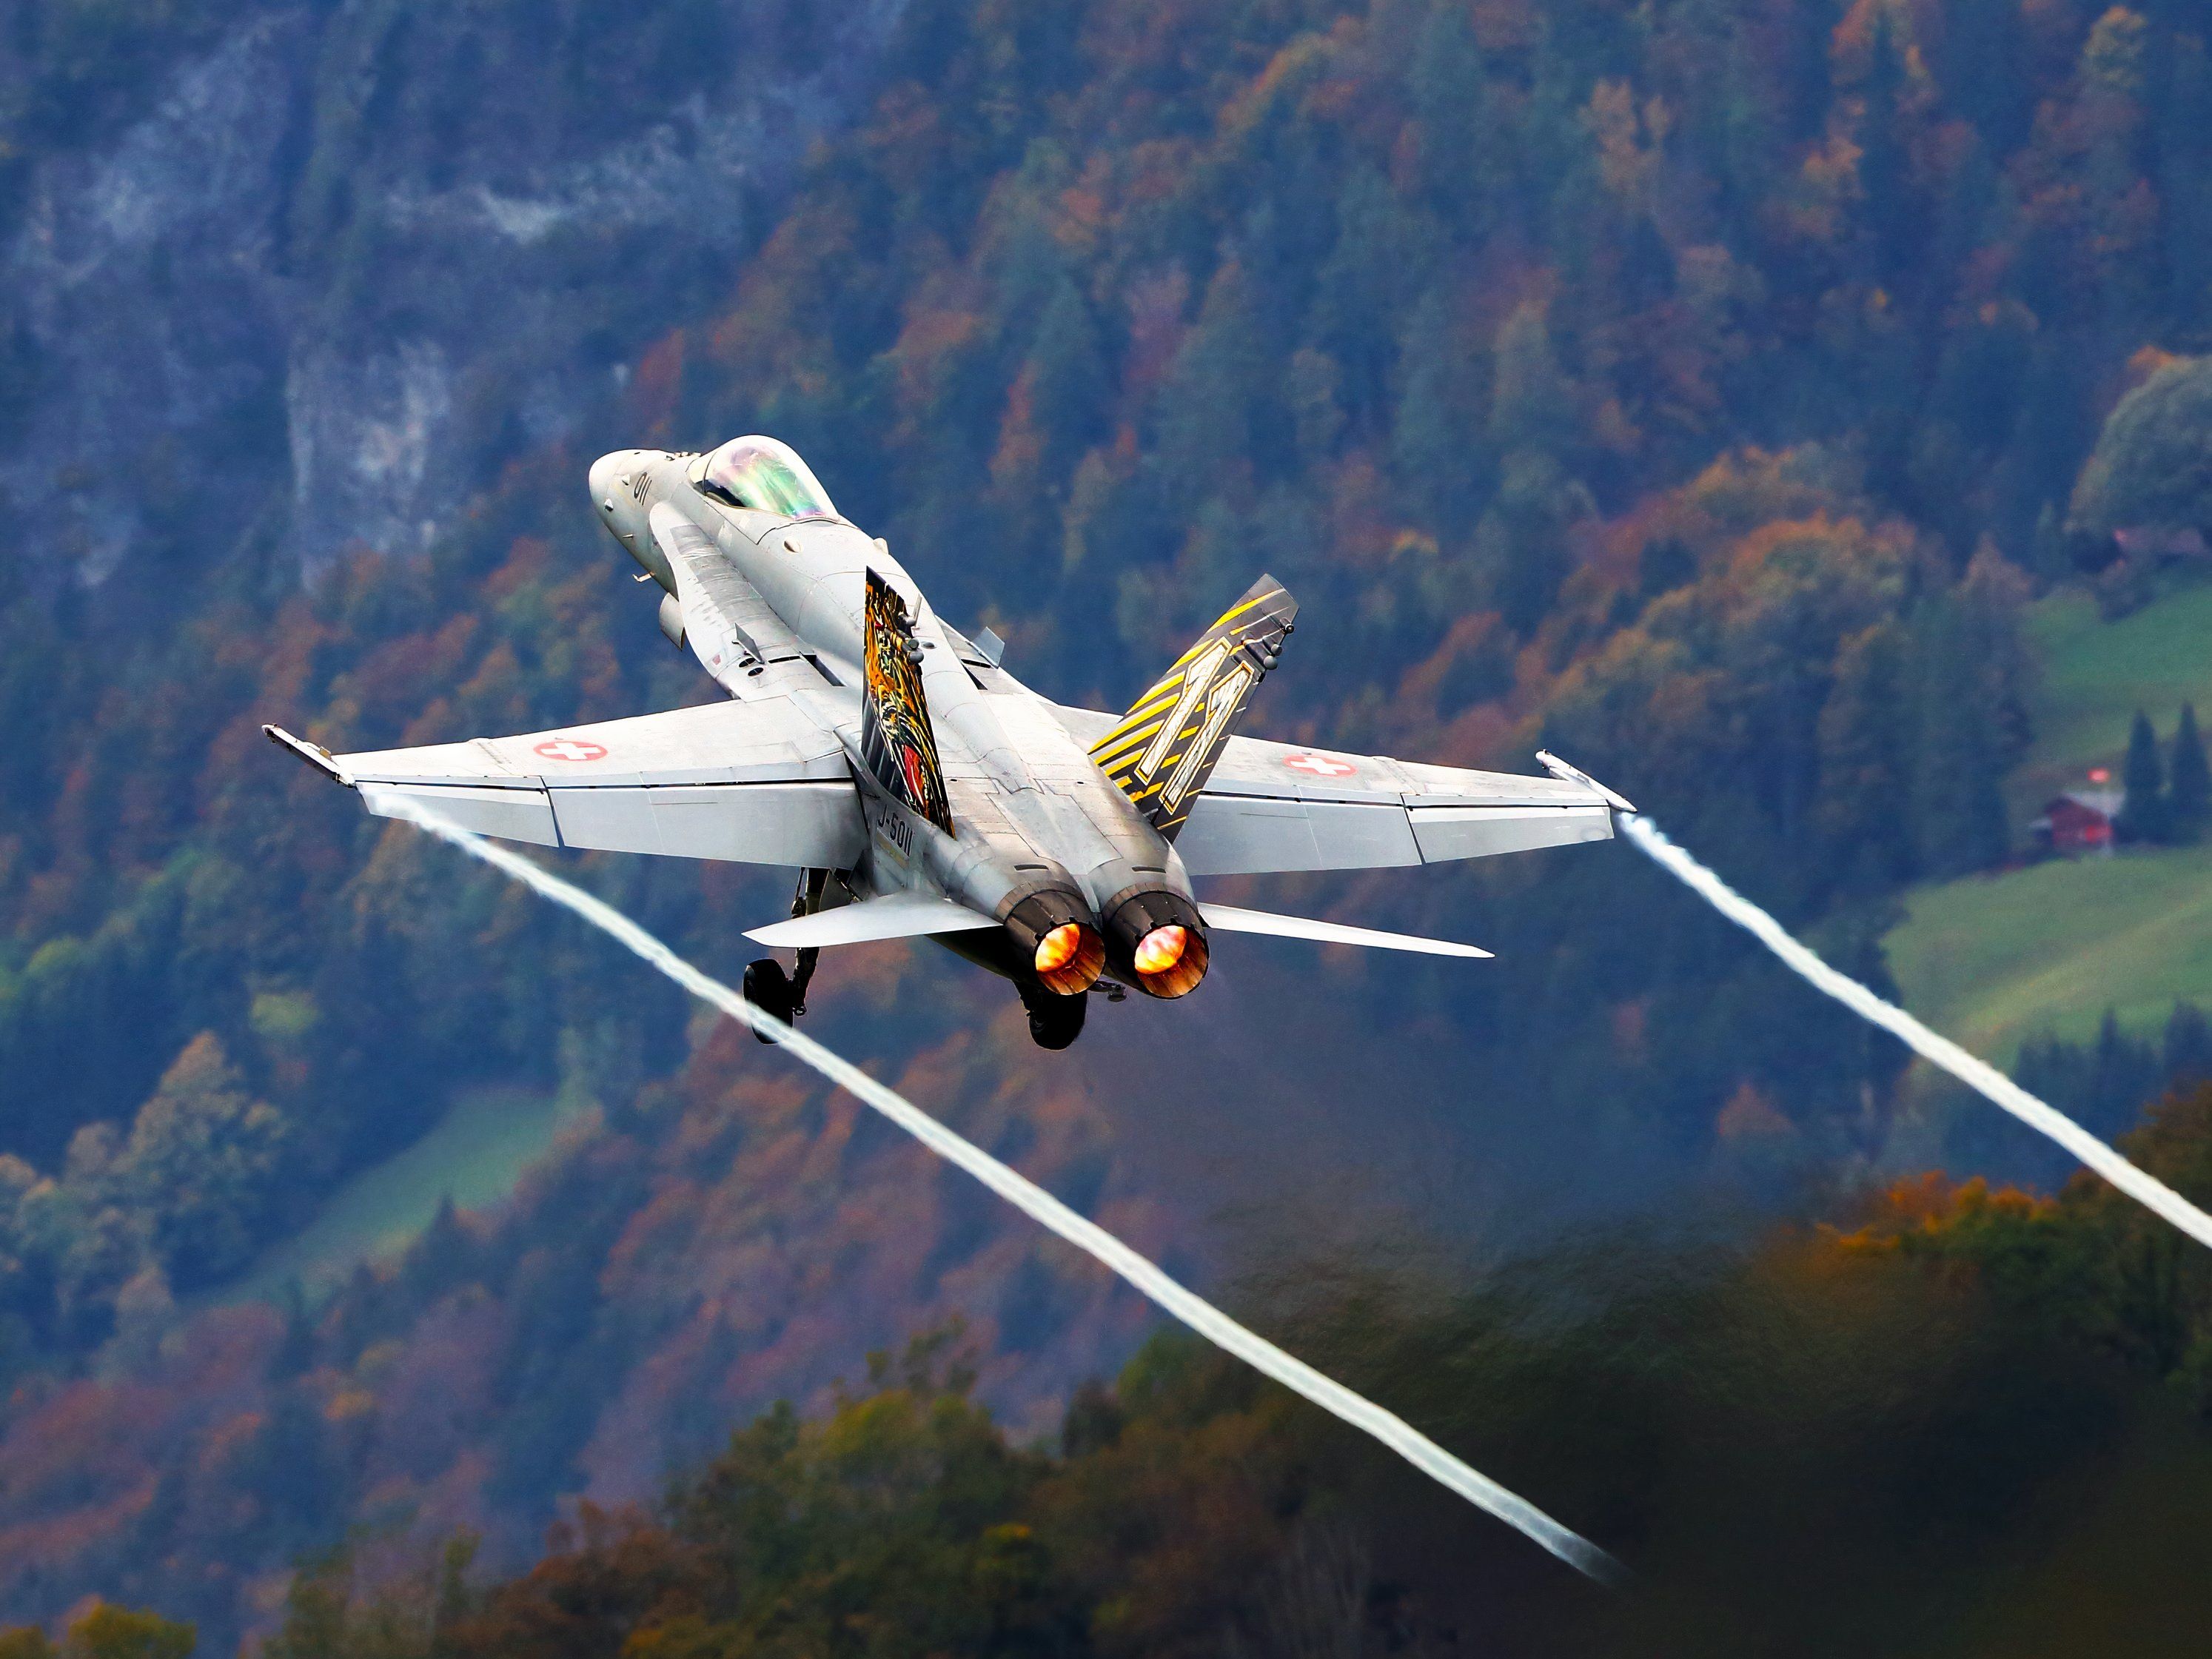 shutterstock_1210218934 - 4x3 - Rising Swiss F/A-18 Hornet on afterburner & vapes